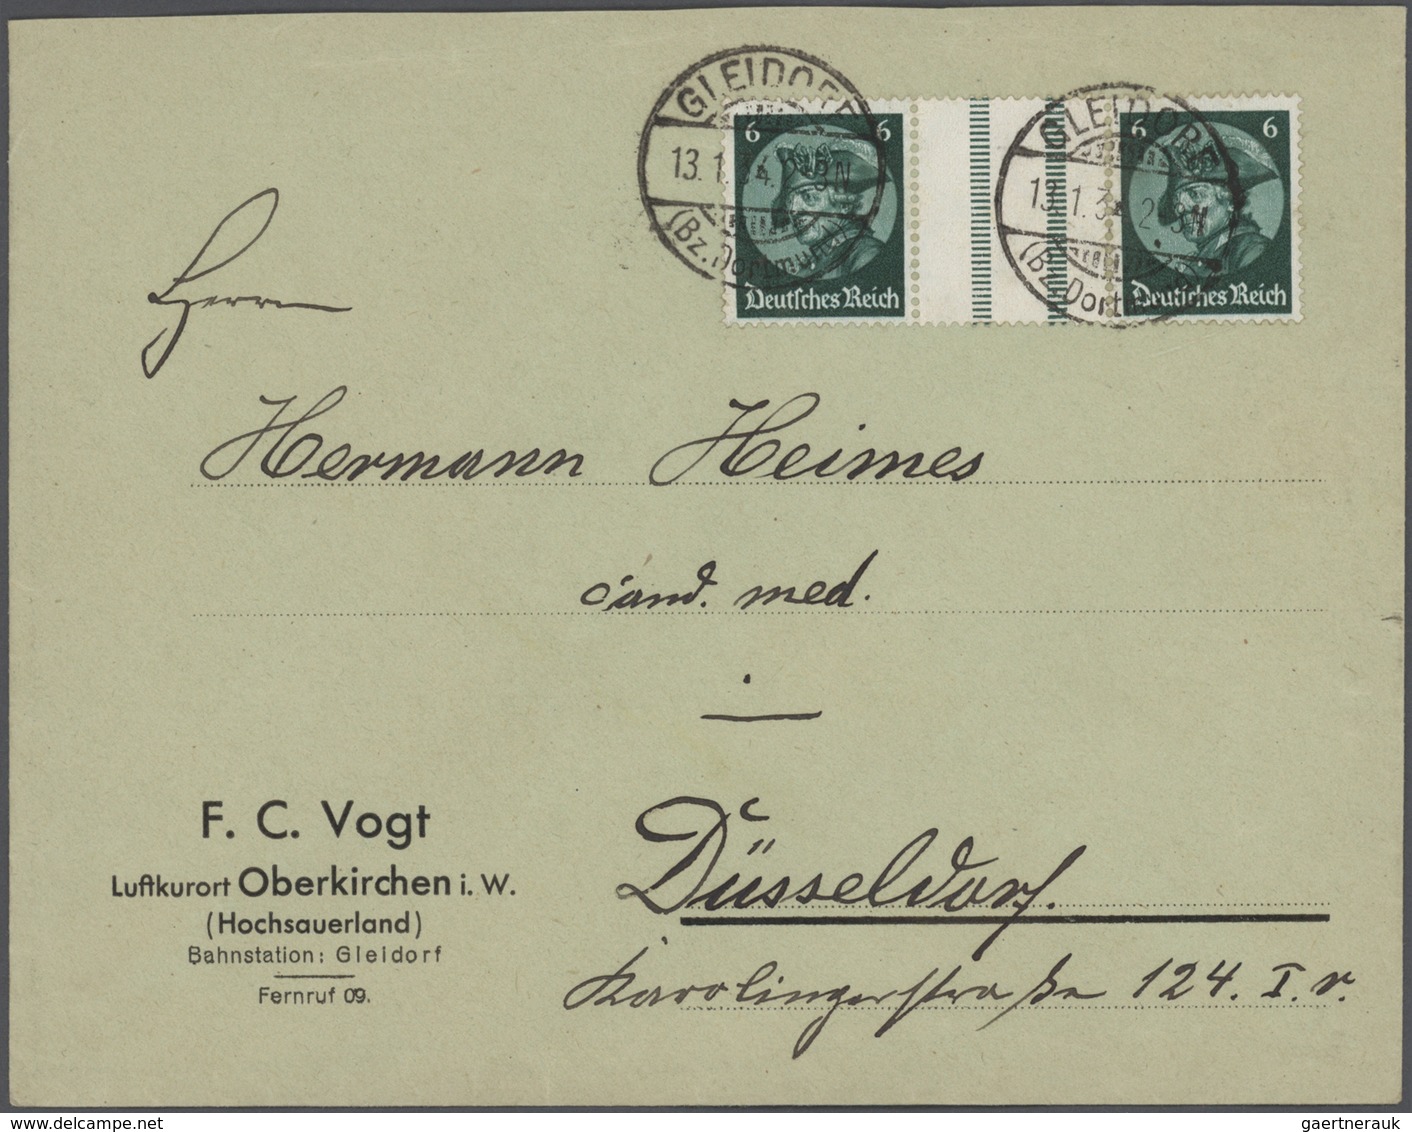 Europa: 1868/1944, kleine Schachtel mit ca 100 Briefen, Ansichtskarten u. Ganzsachen, überwiegend au